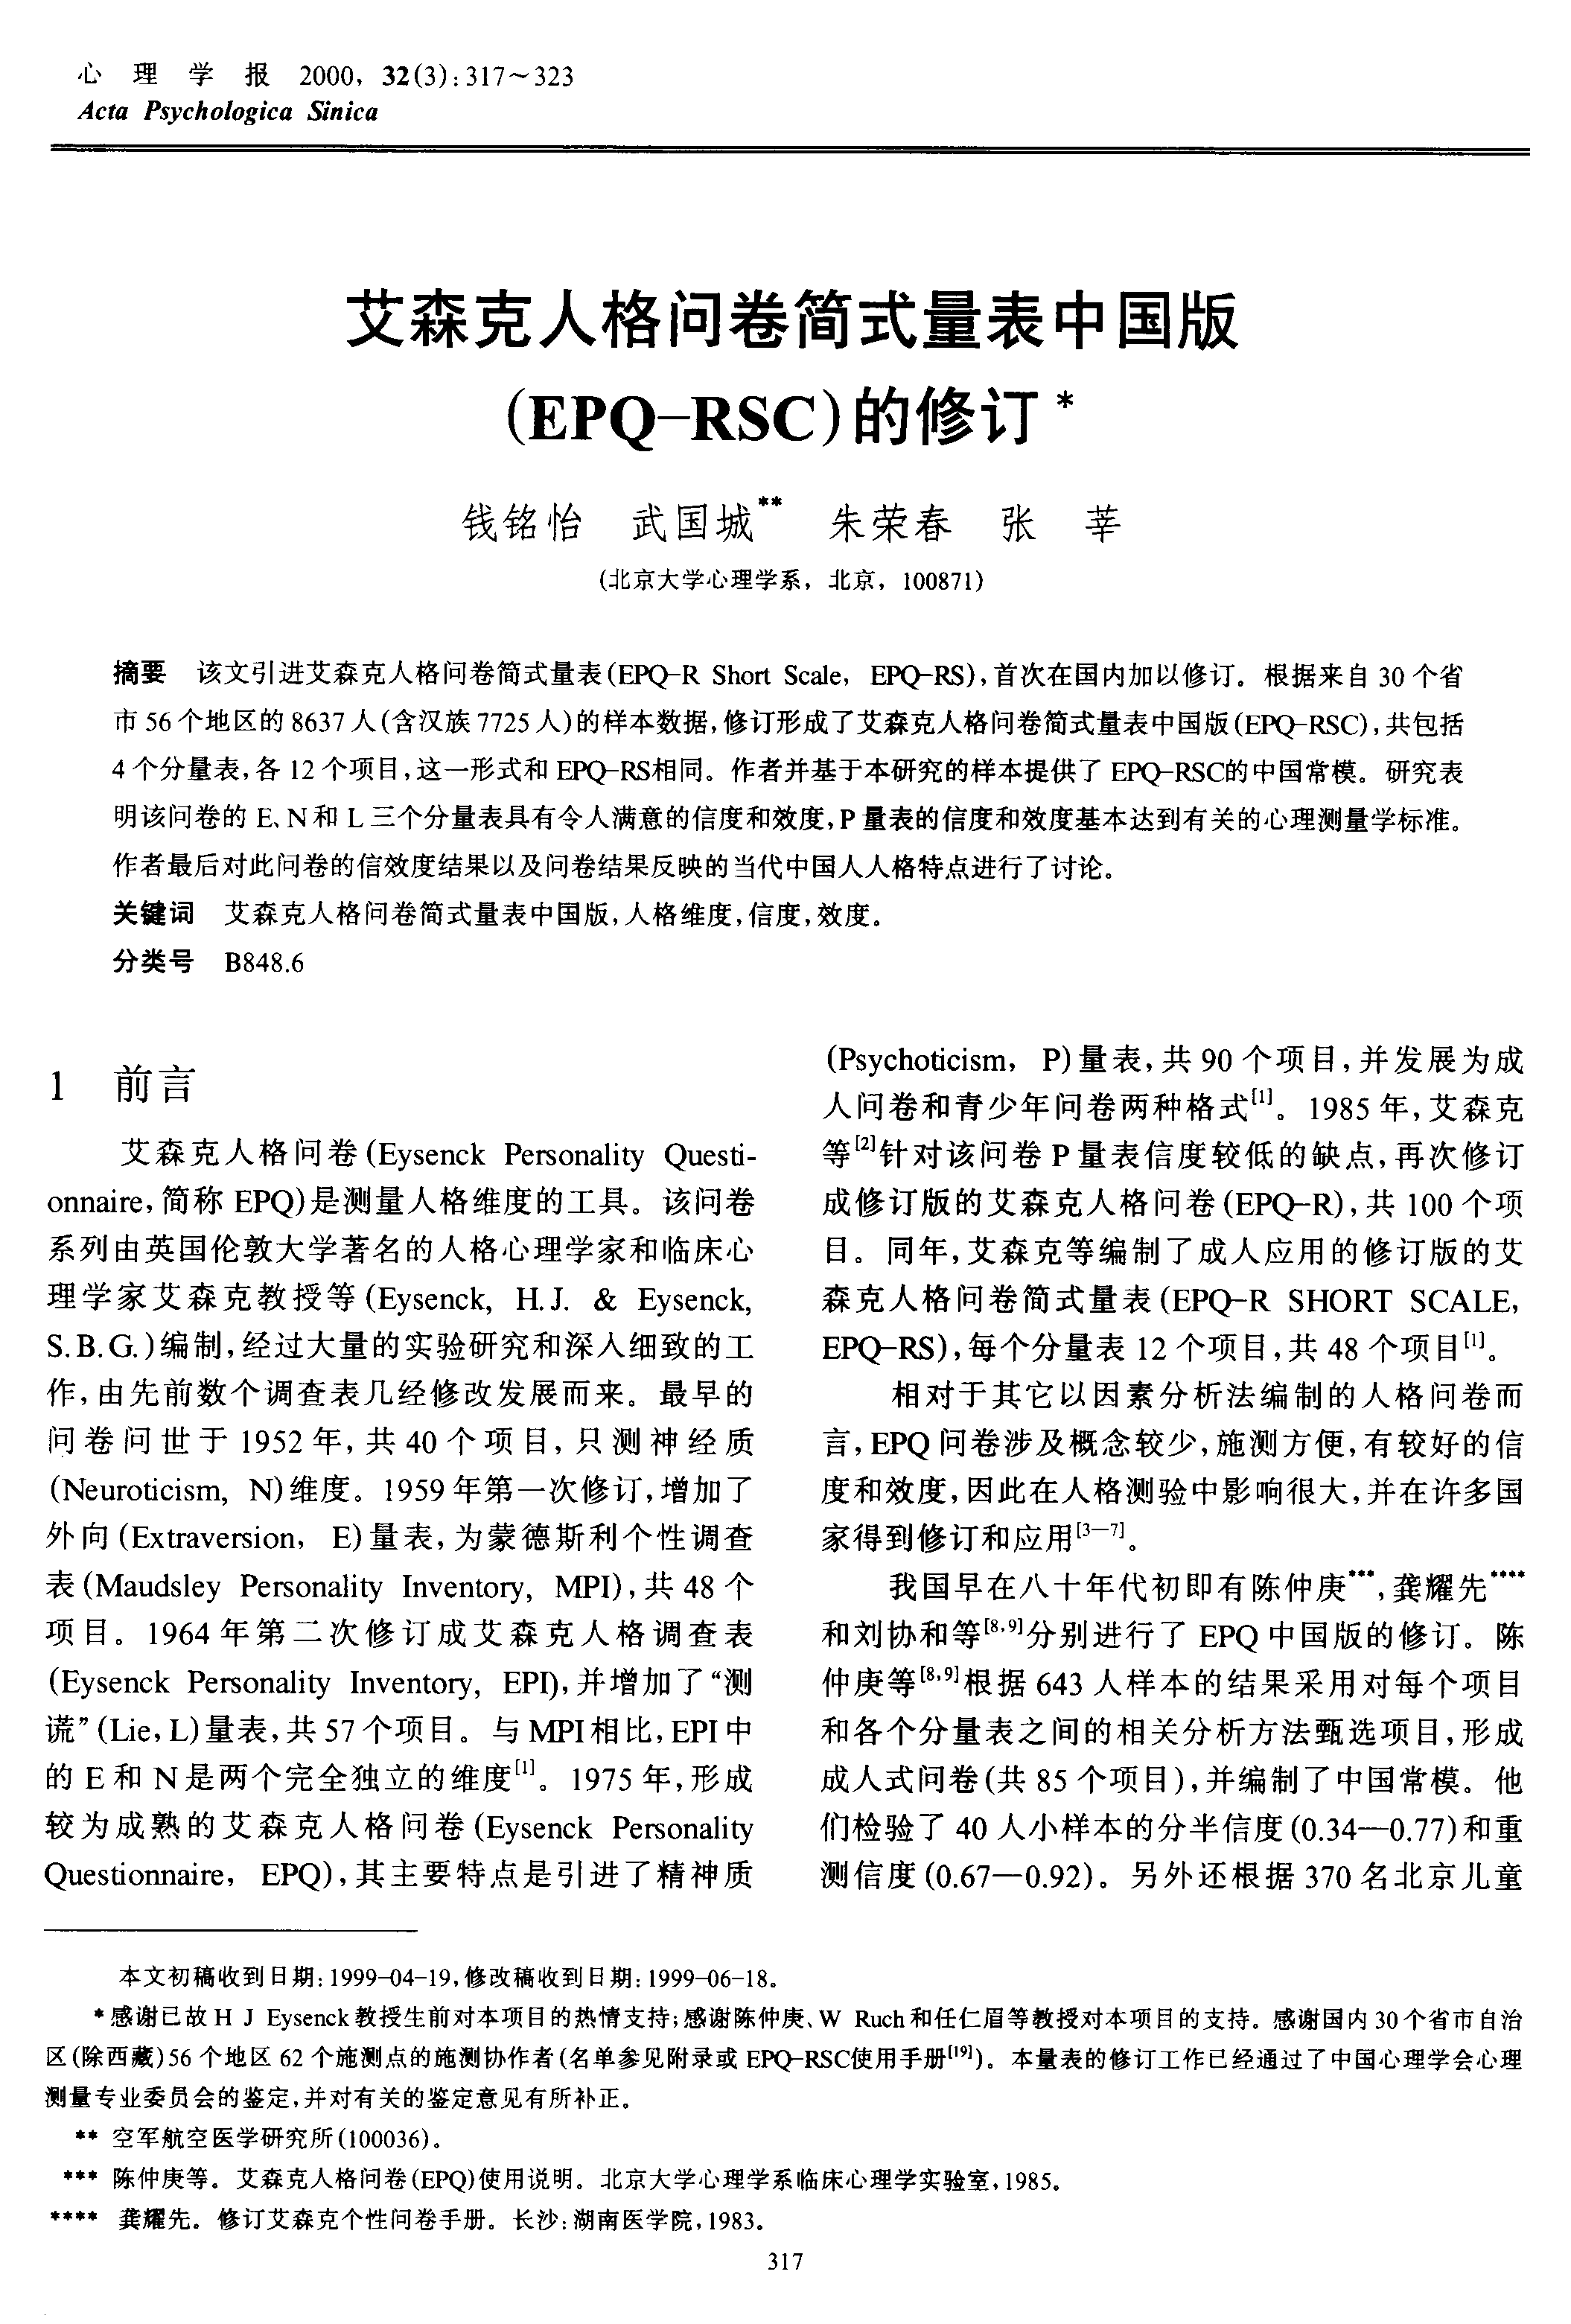 艾森克人格问卷简式量表中国版EPQ-RSC的修订